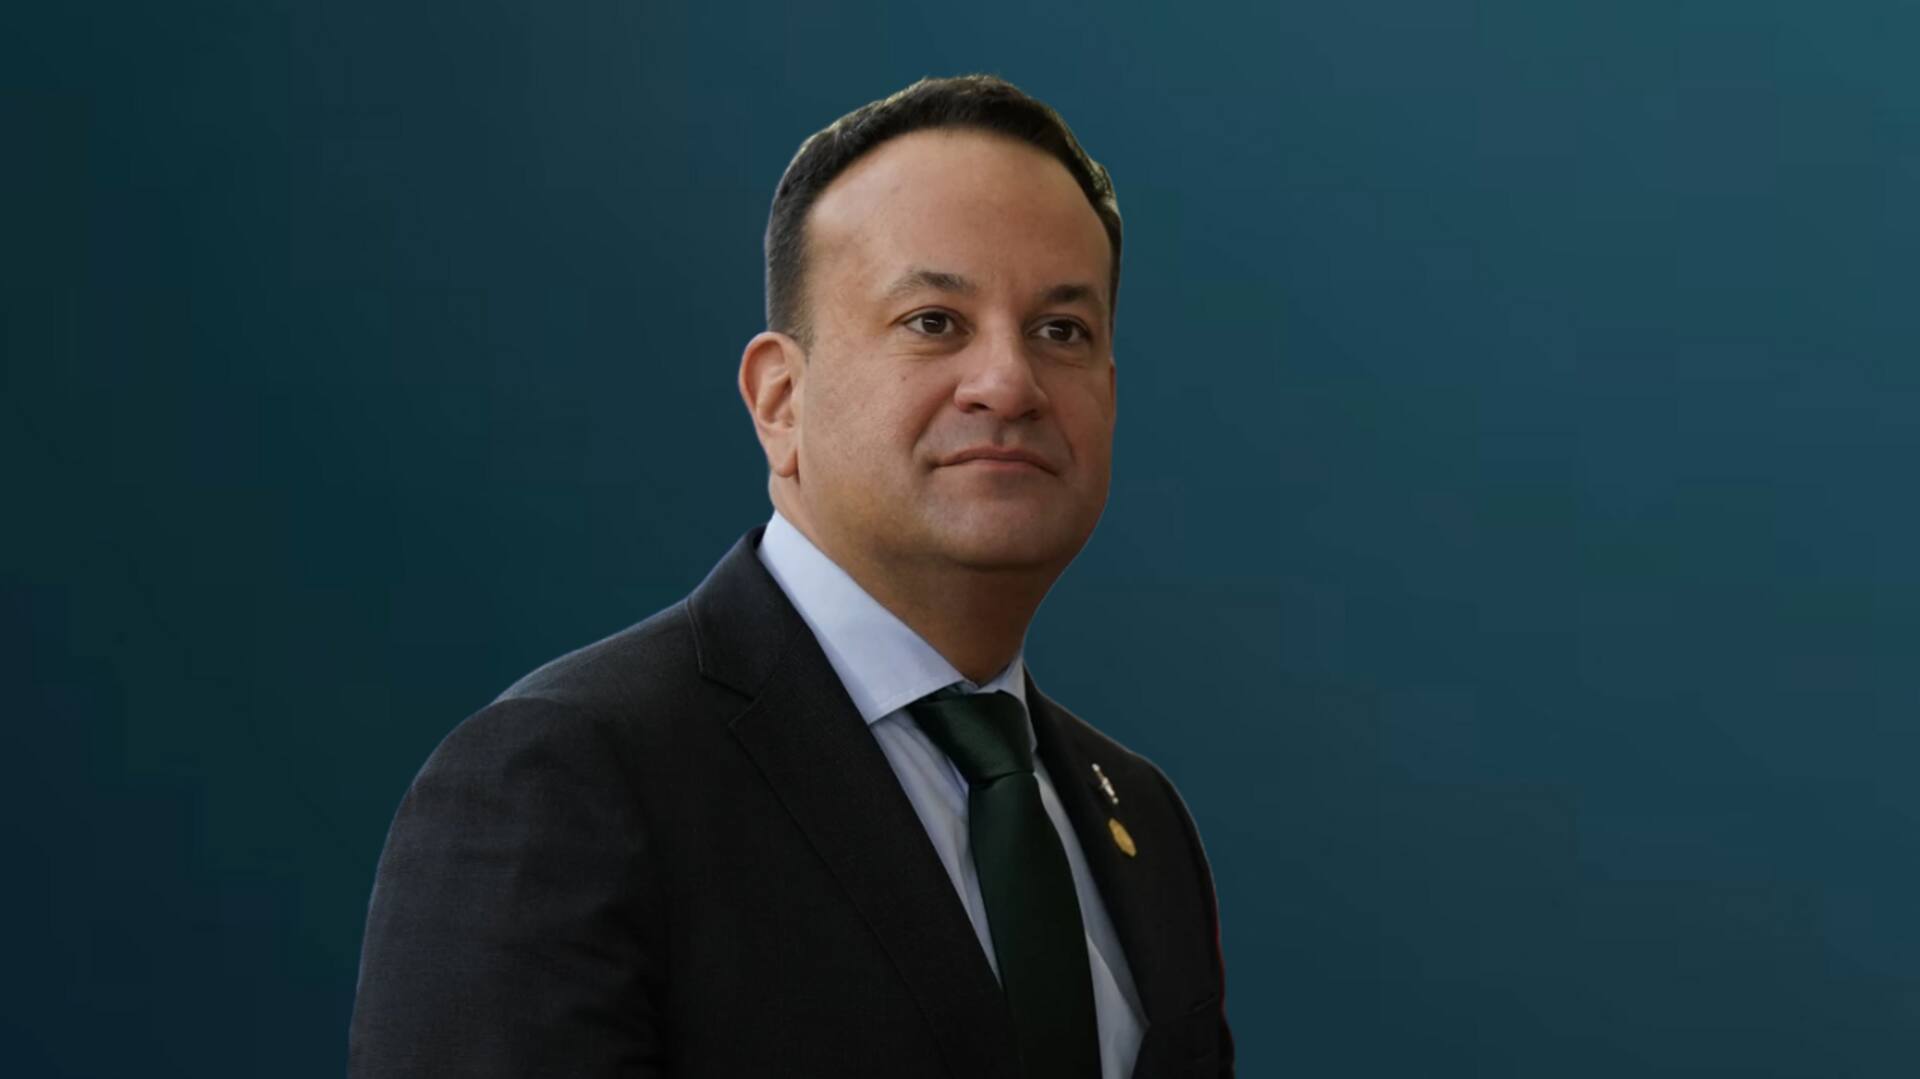 आयरलैंड के प्रधानमंत्री लियो वराडकर ने किया पद छोड़ने का ऐलान